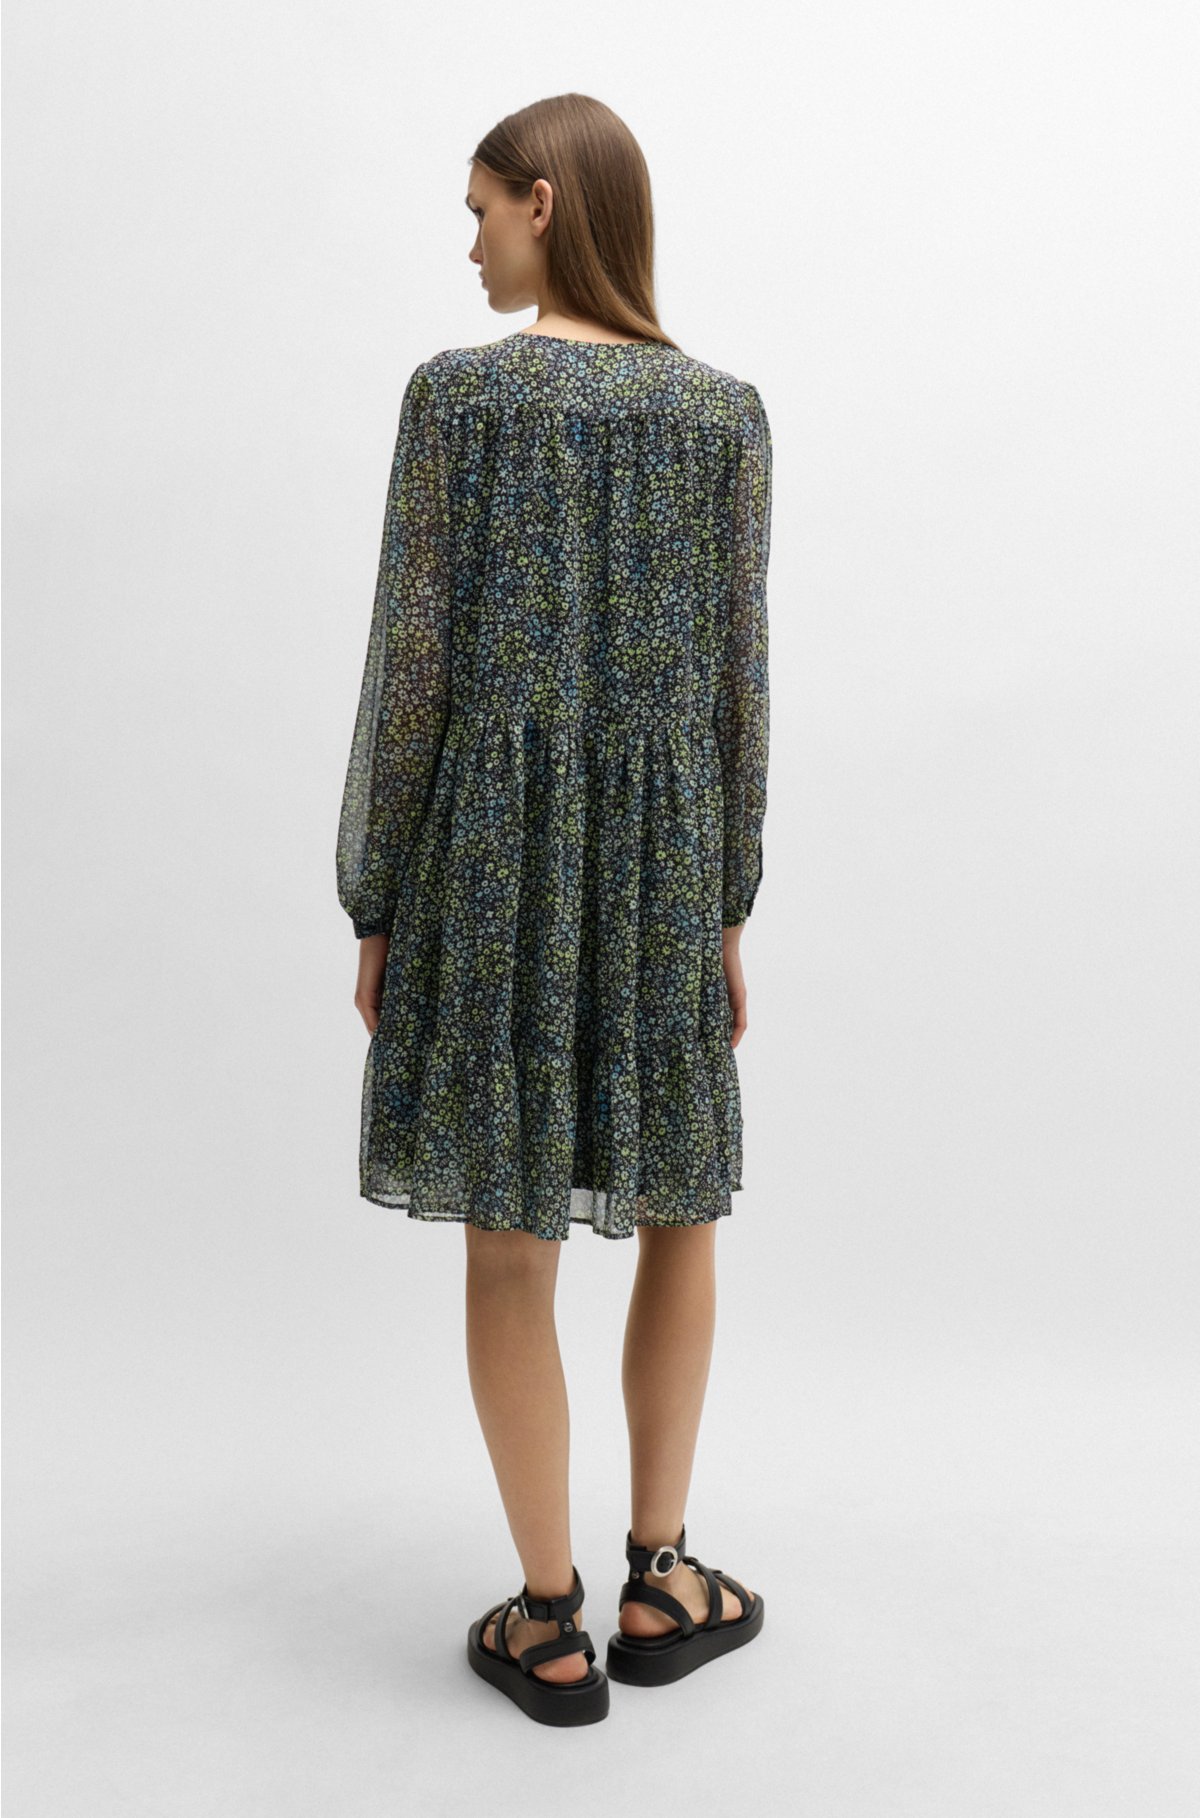 Crepe-Georgette long-sleeved dress with seasonal print, Patterned